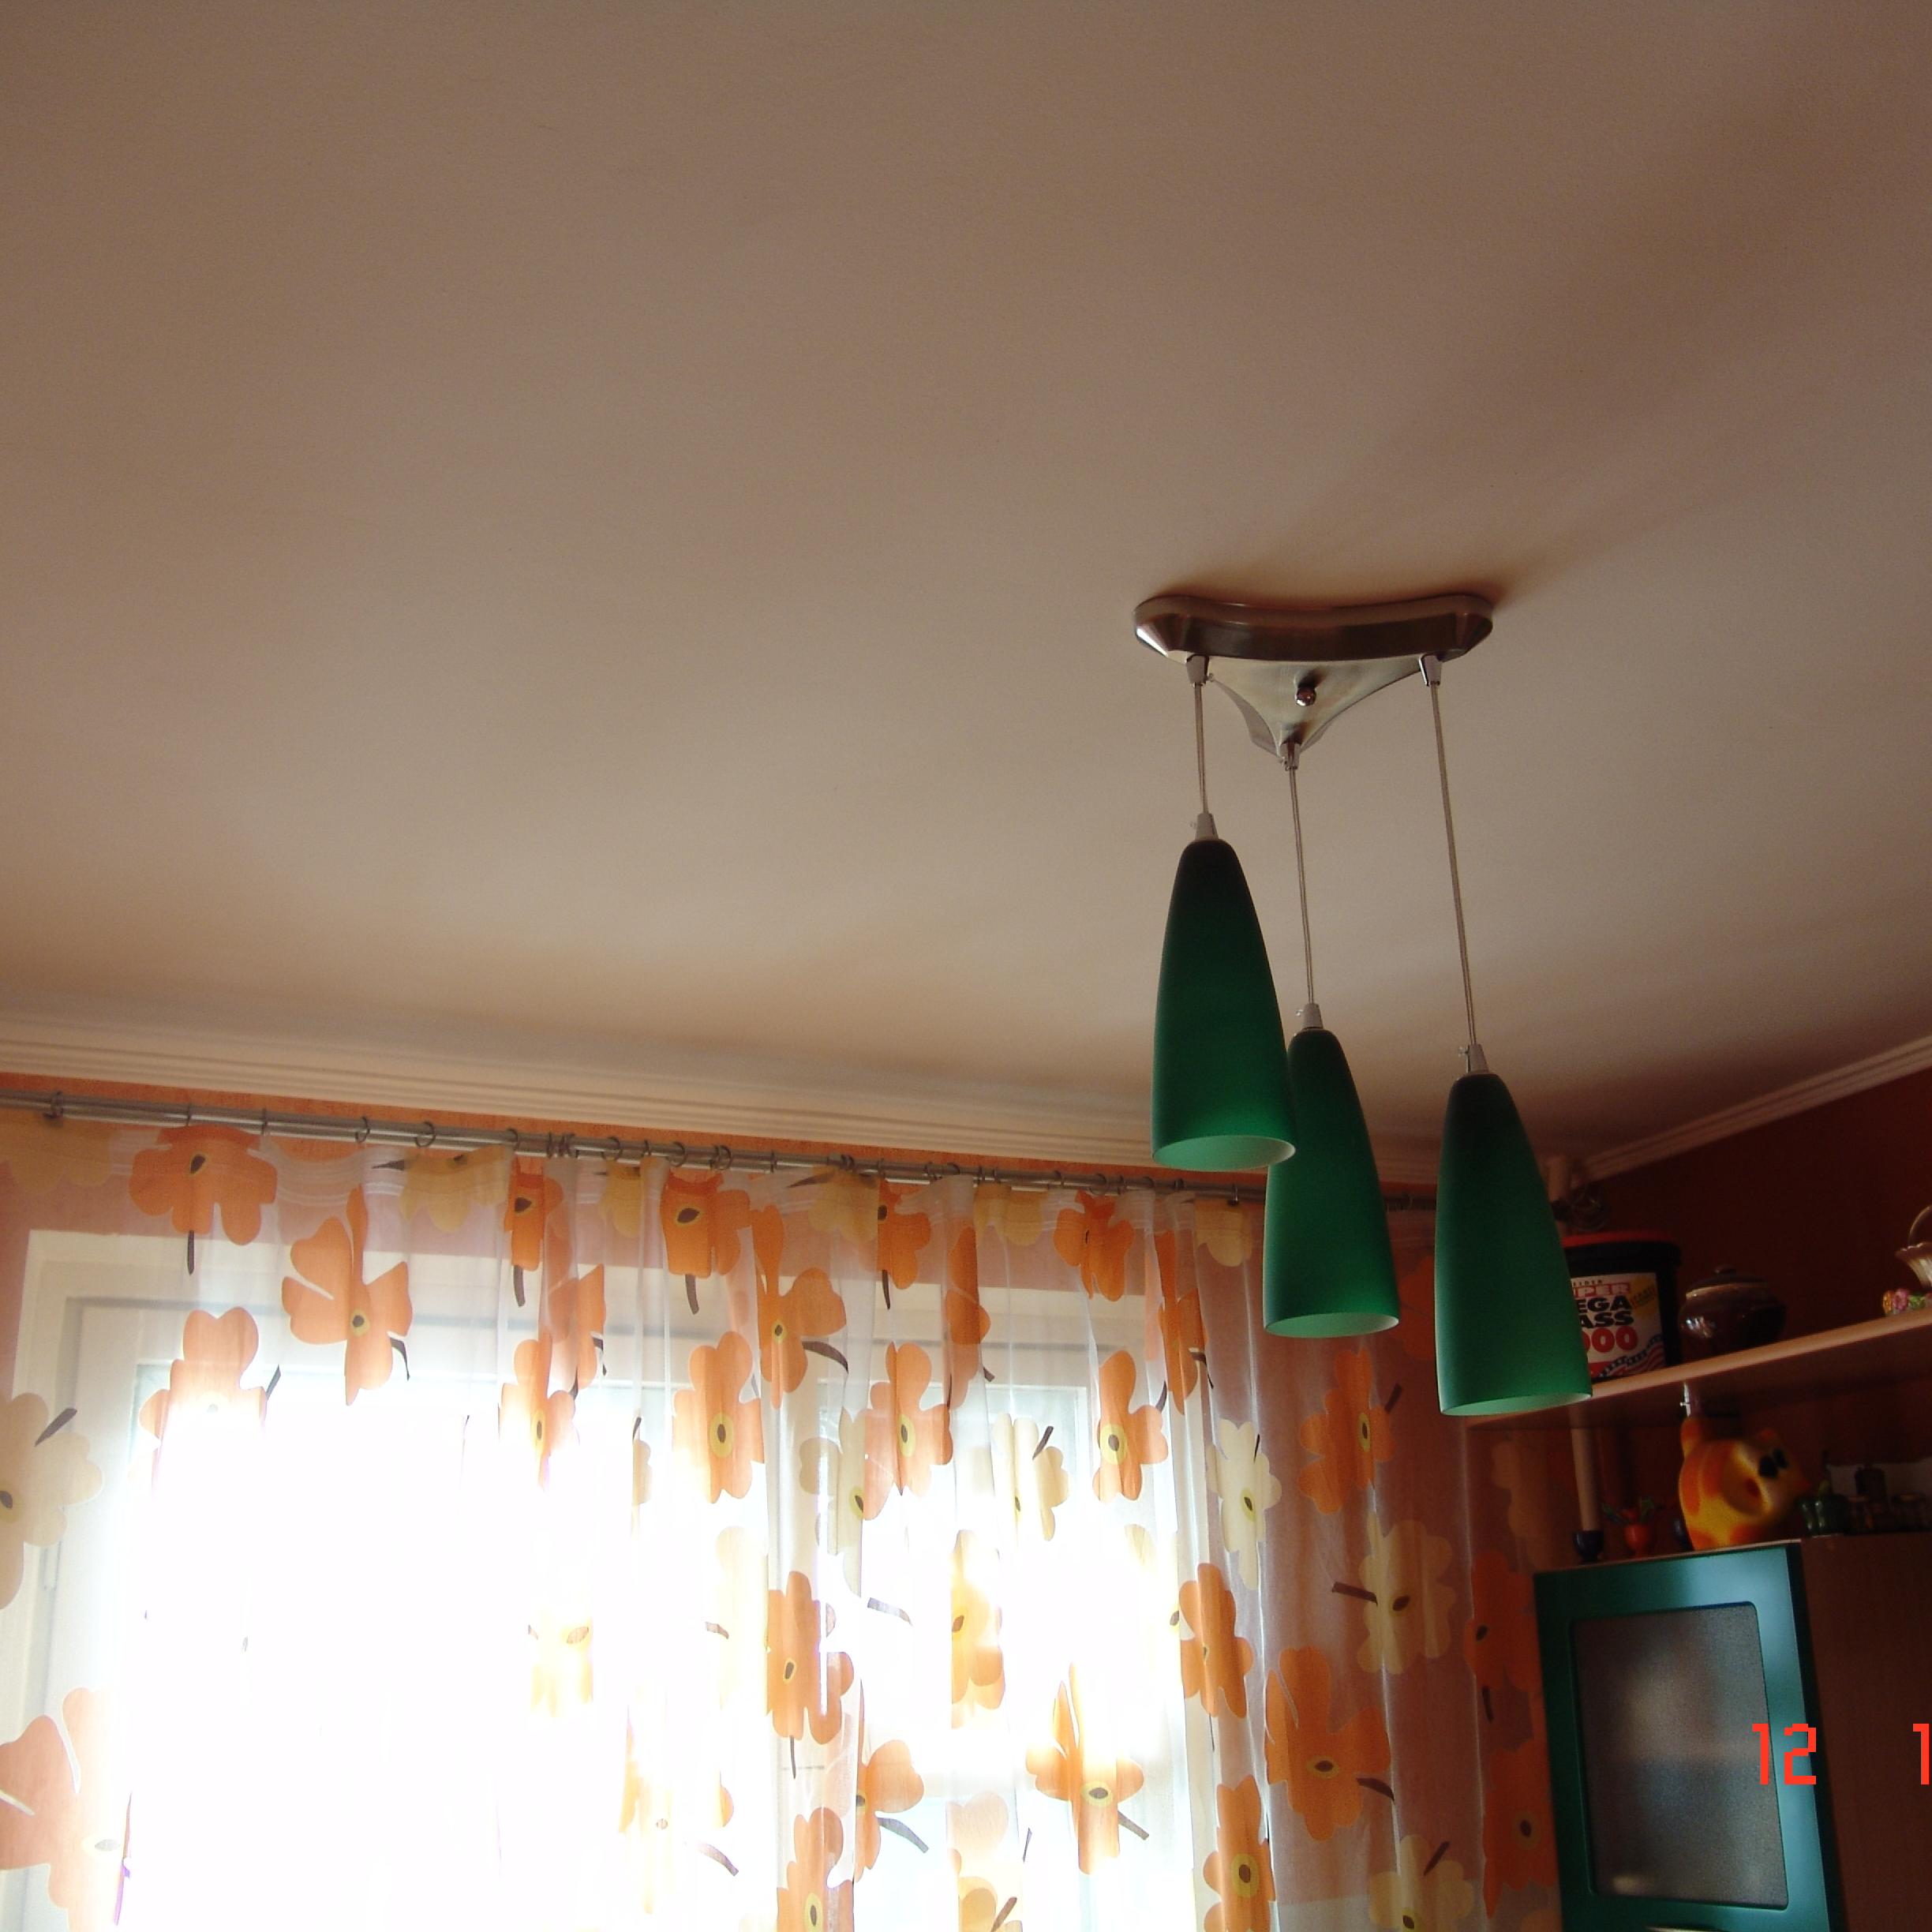 Ремонт потолков и стен в двухкомнатной квартире на ул. Алексеева 14 в Красноярске